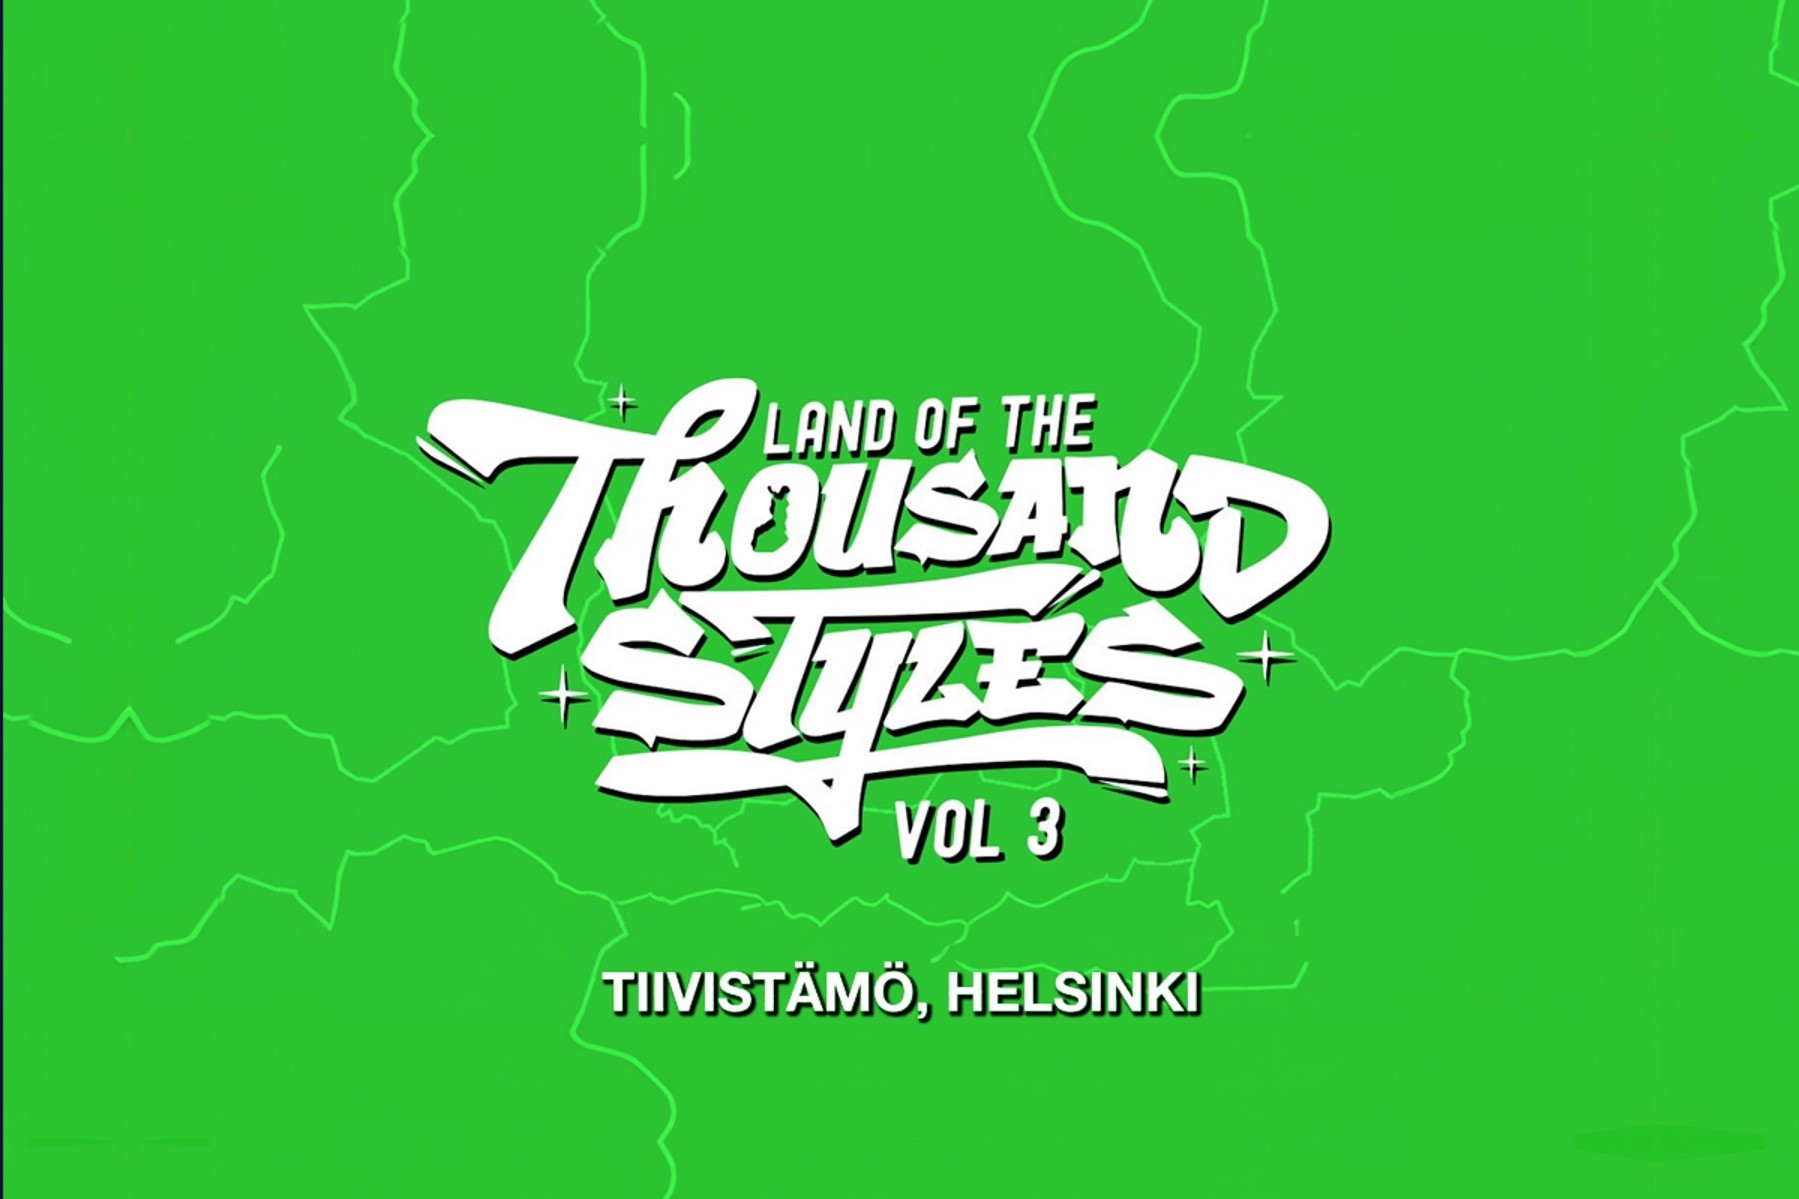 Land of the Thousand Styles vol 3. Tiivistämö, Helsinki.